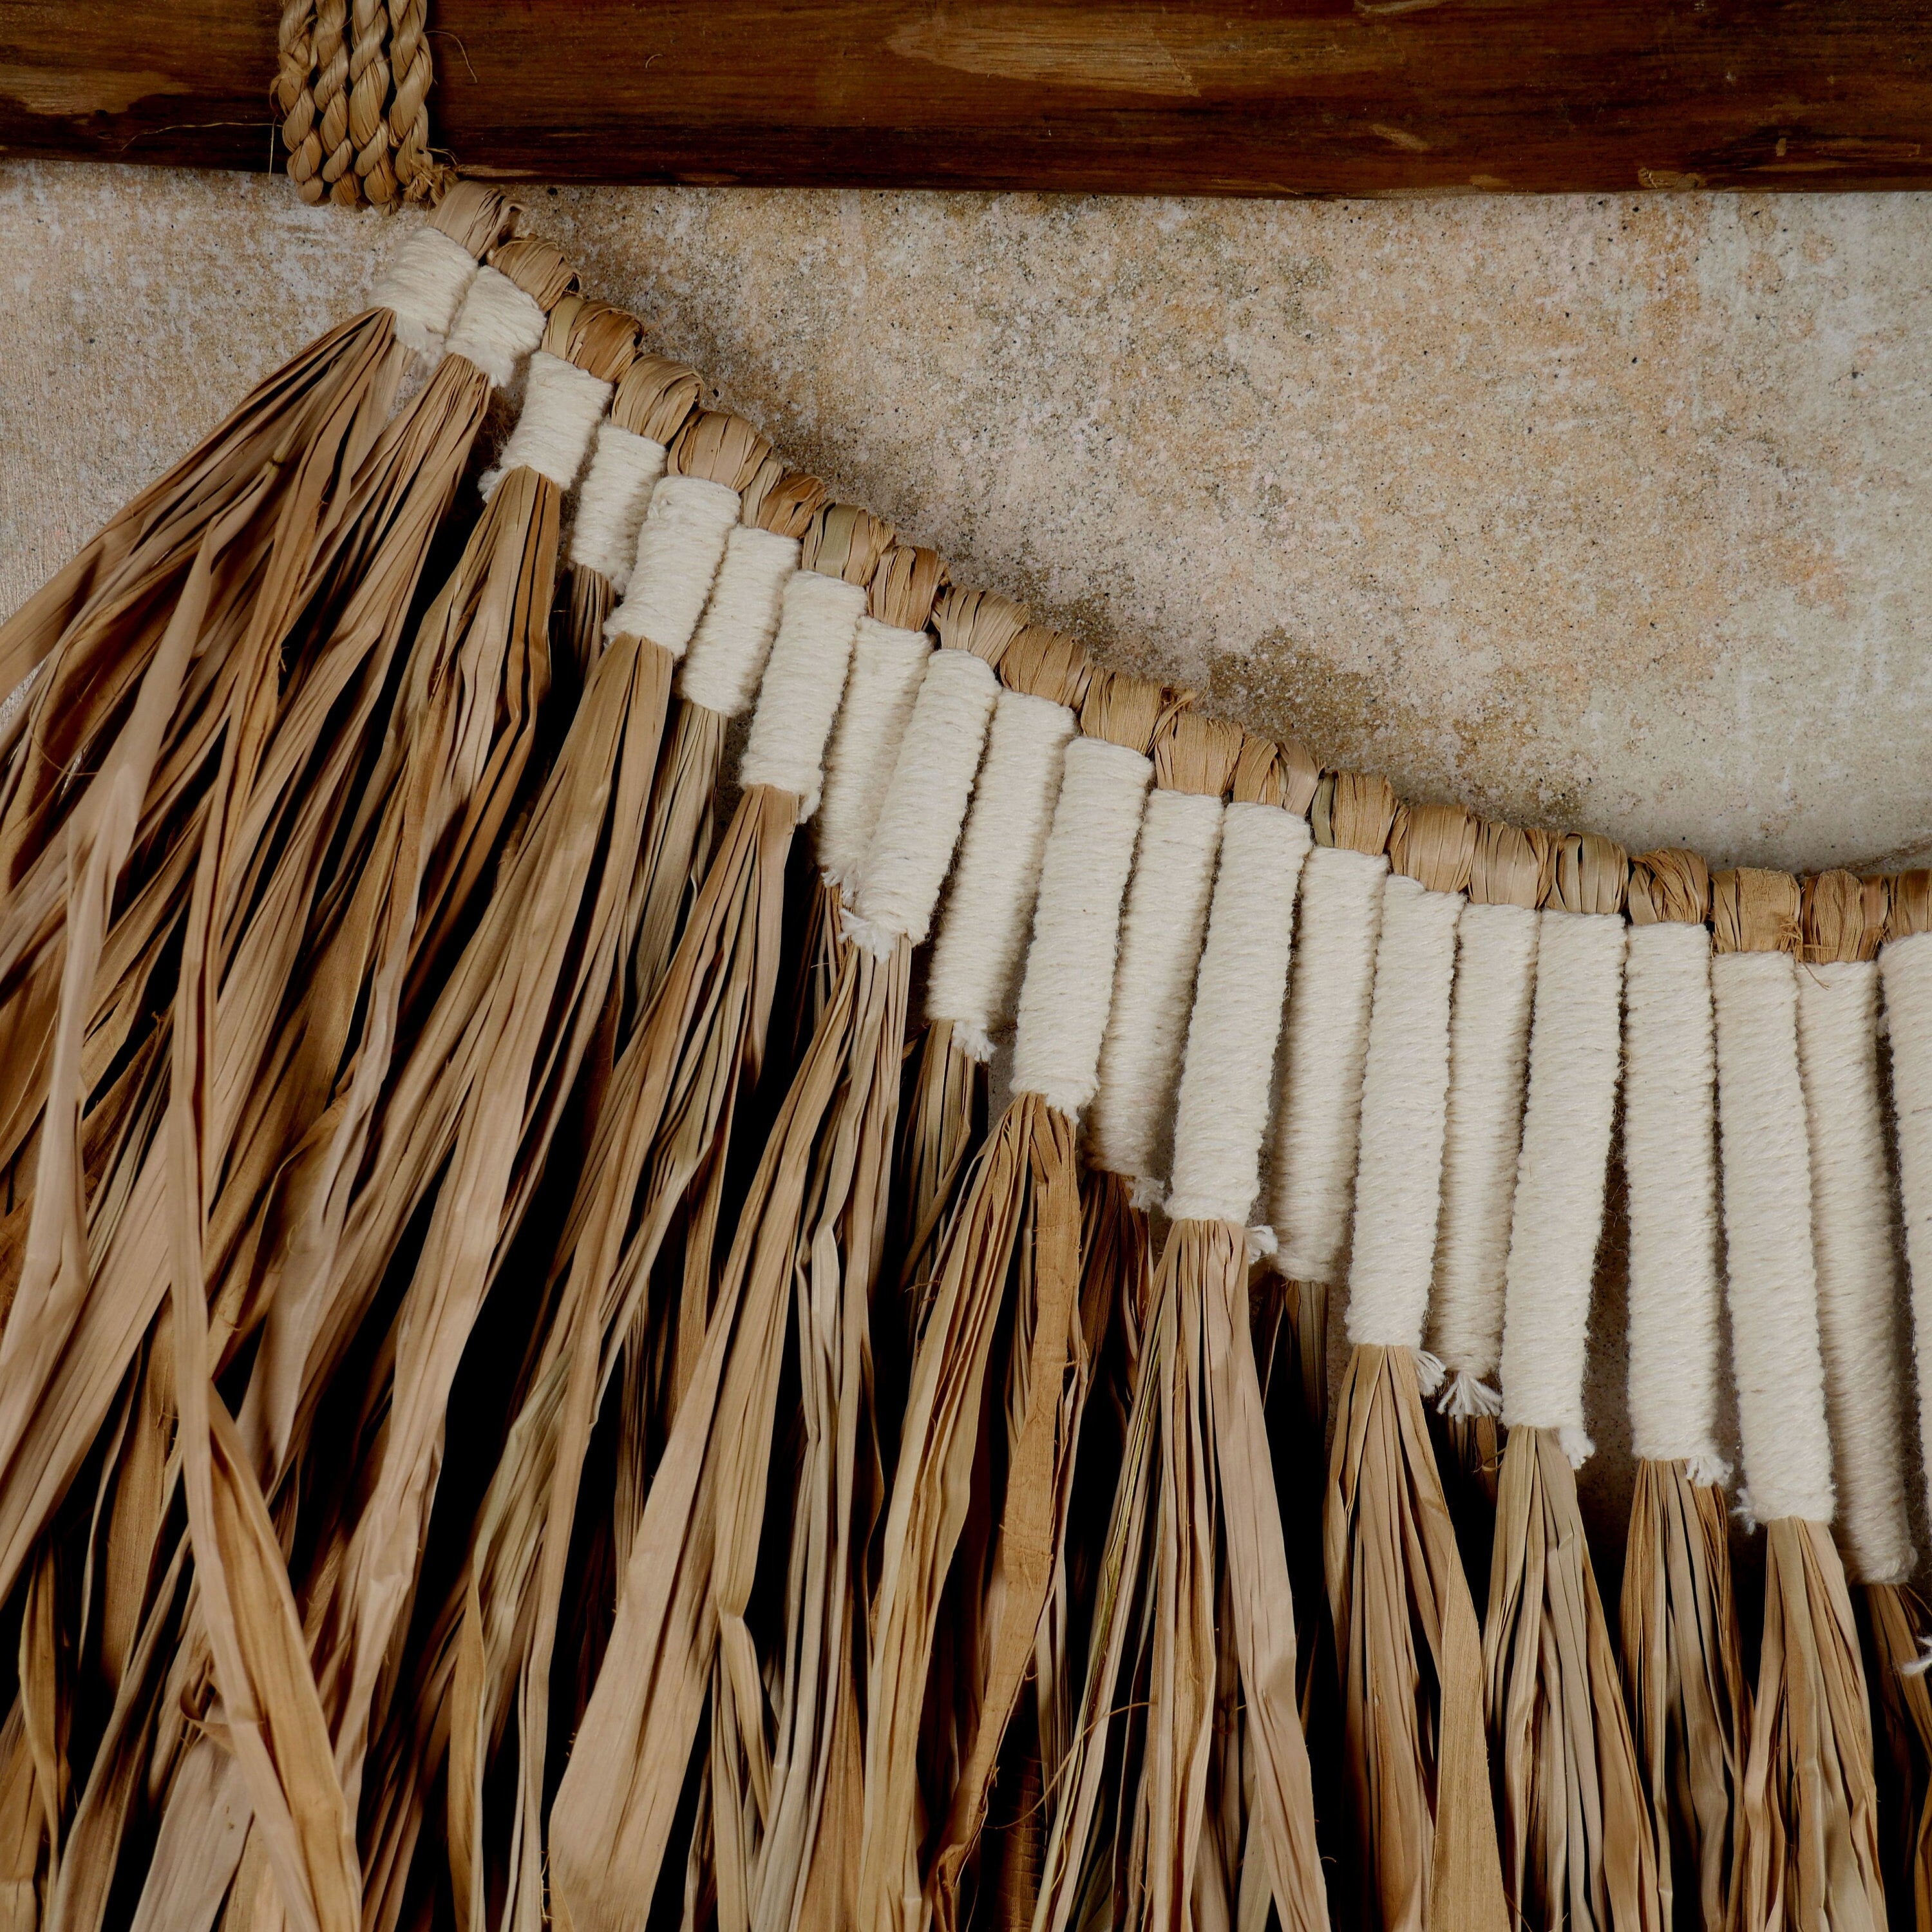 The Tali Putih Wall Hanger - Natural Raffia Tribal Wall Hanging - Raffia and String Wall Hanging - Boho Wall Decor